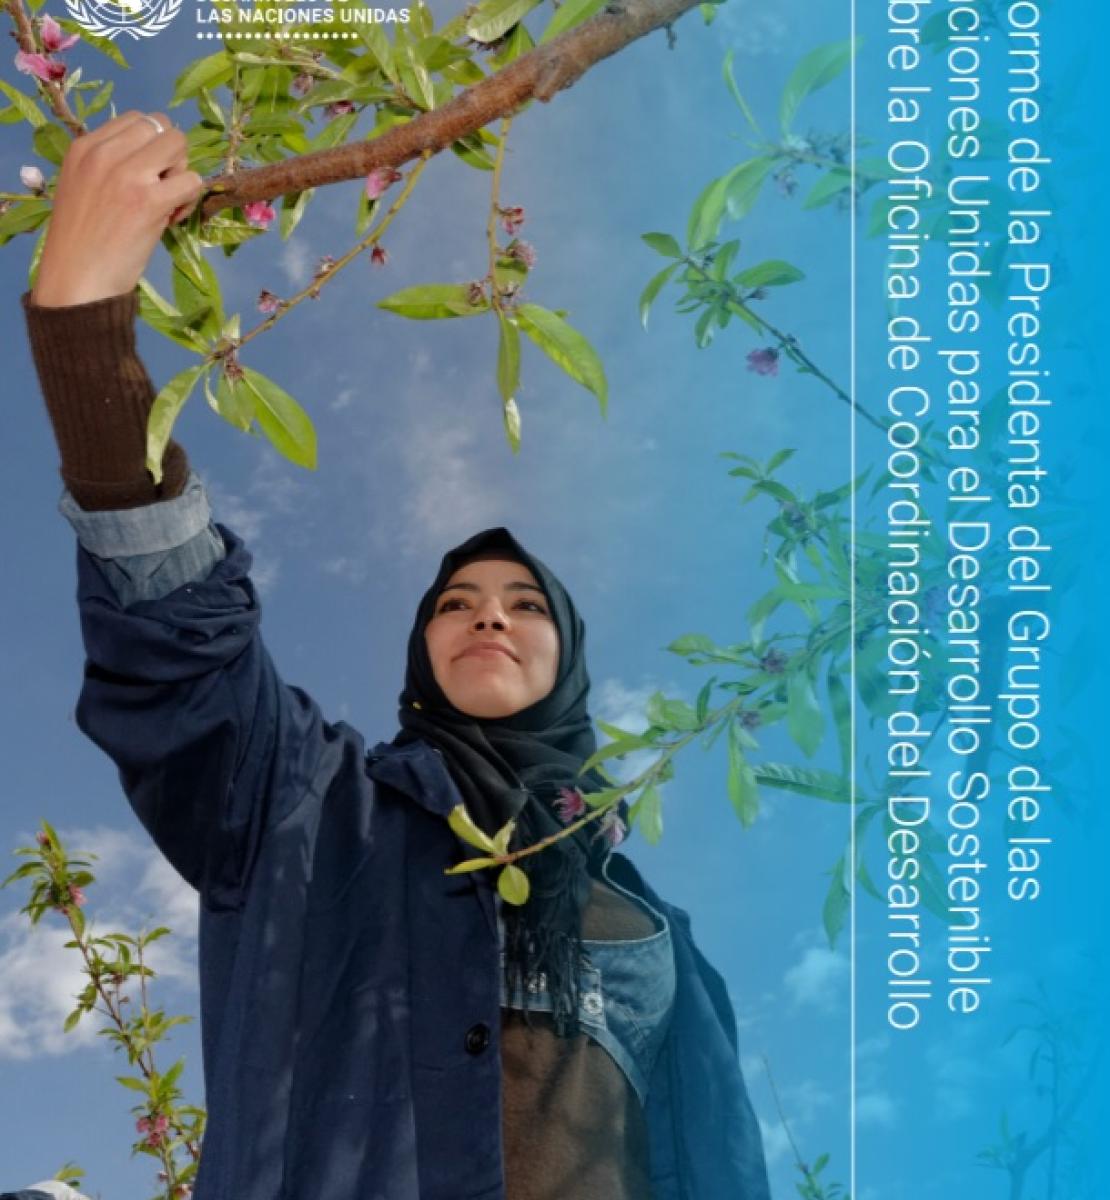 Portada del Informe 2021 de la Presidencia del Grupo de las Naciones Unidas para el Desarrollo Sostenible sobre la Oficina de Coordinación del Desarrollo. Se muestra un plano contrapicado de una mujer recolectando frutos en un árbol, con un cielo azul despejado en el fondo.